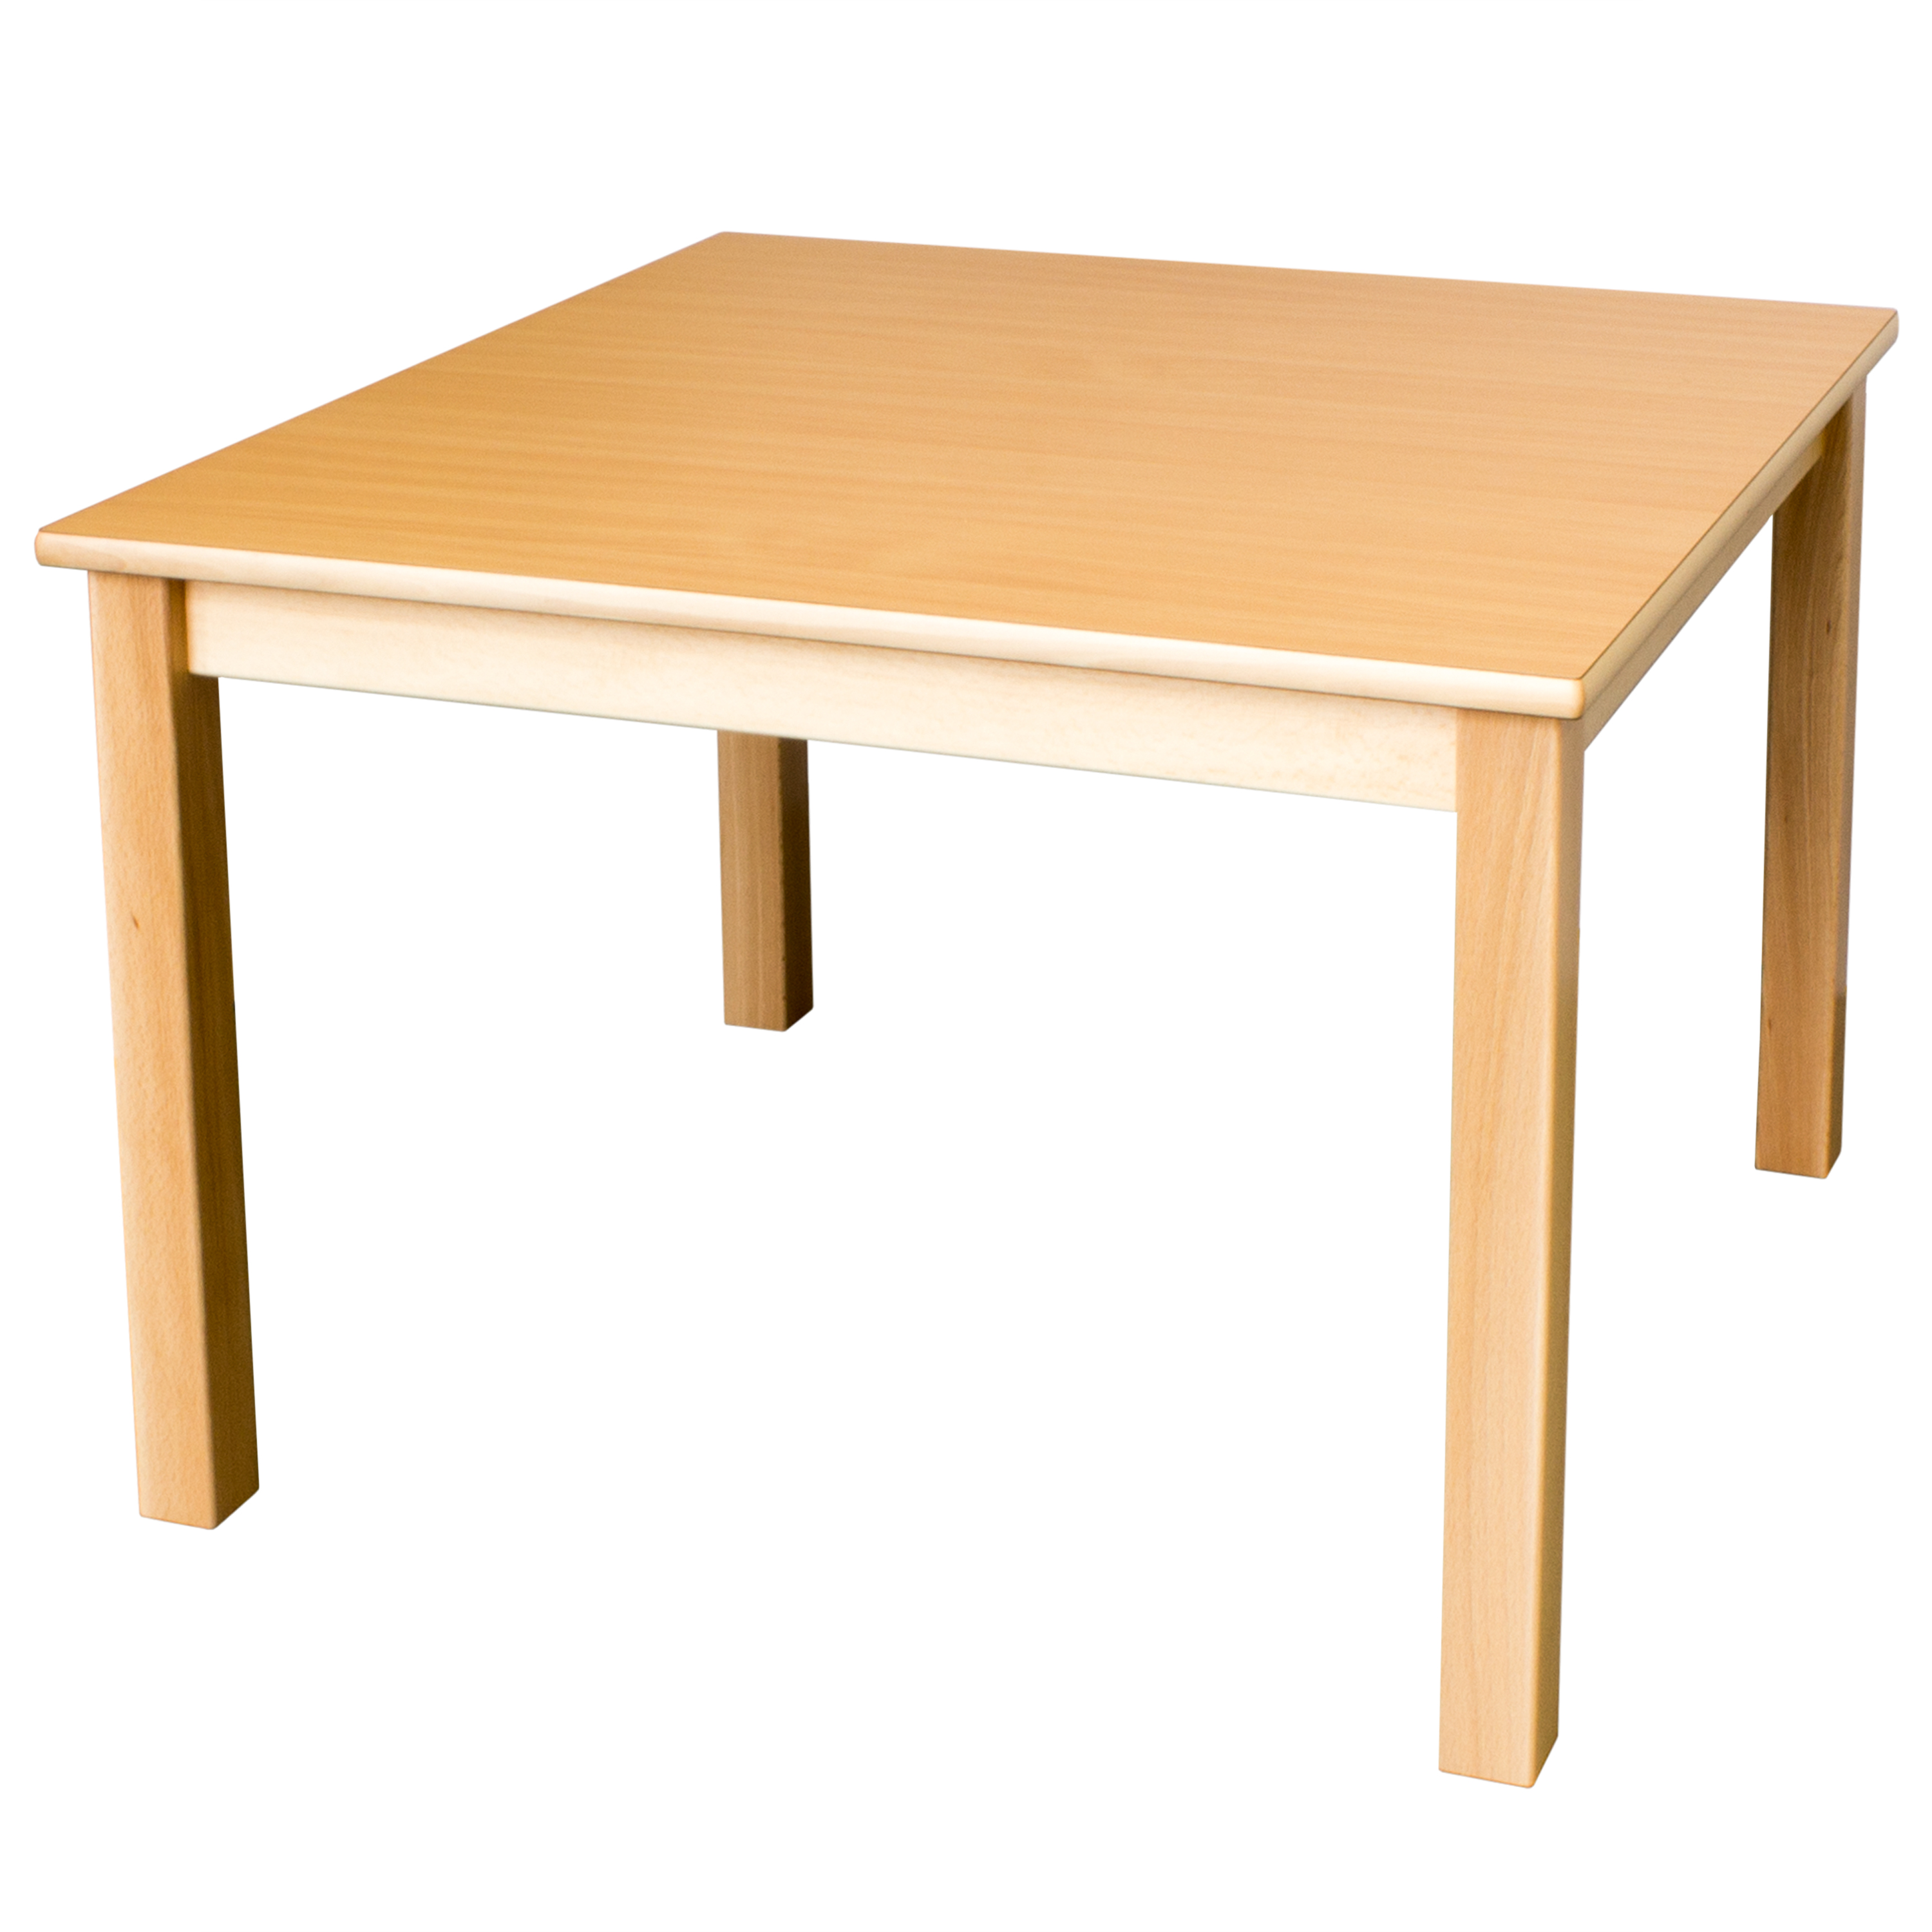 Quadrattisch in der Größe 60 x 60 cm, Tischhöhe 34 cm